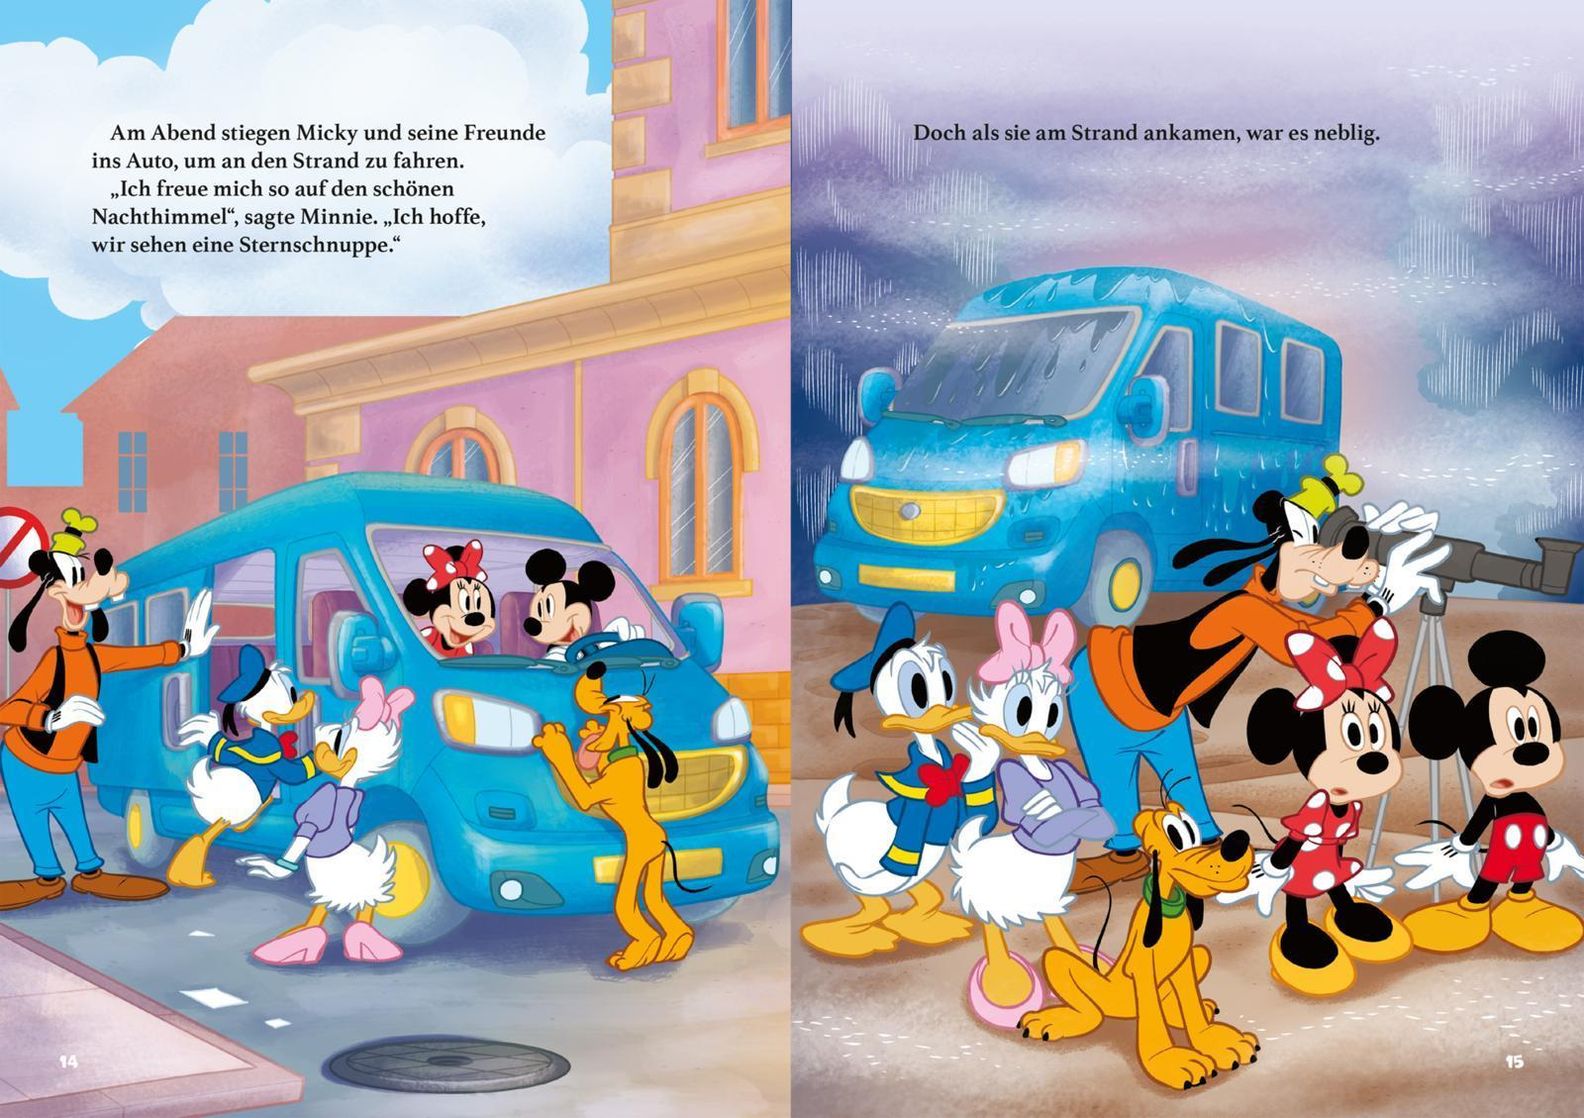 Disney Micky Maus: Mickys liebste Gutenacht-Geschichten kaufen